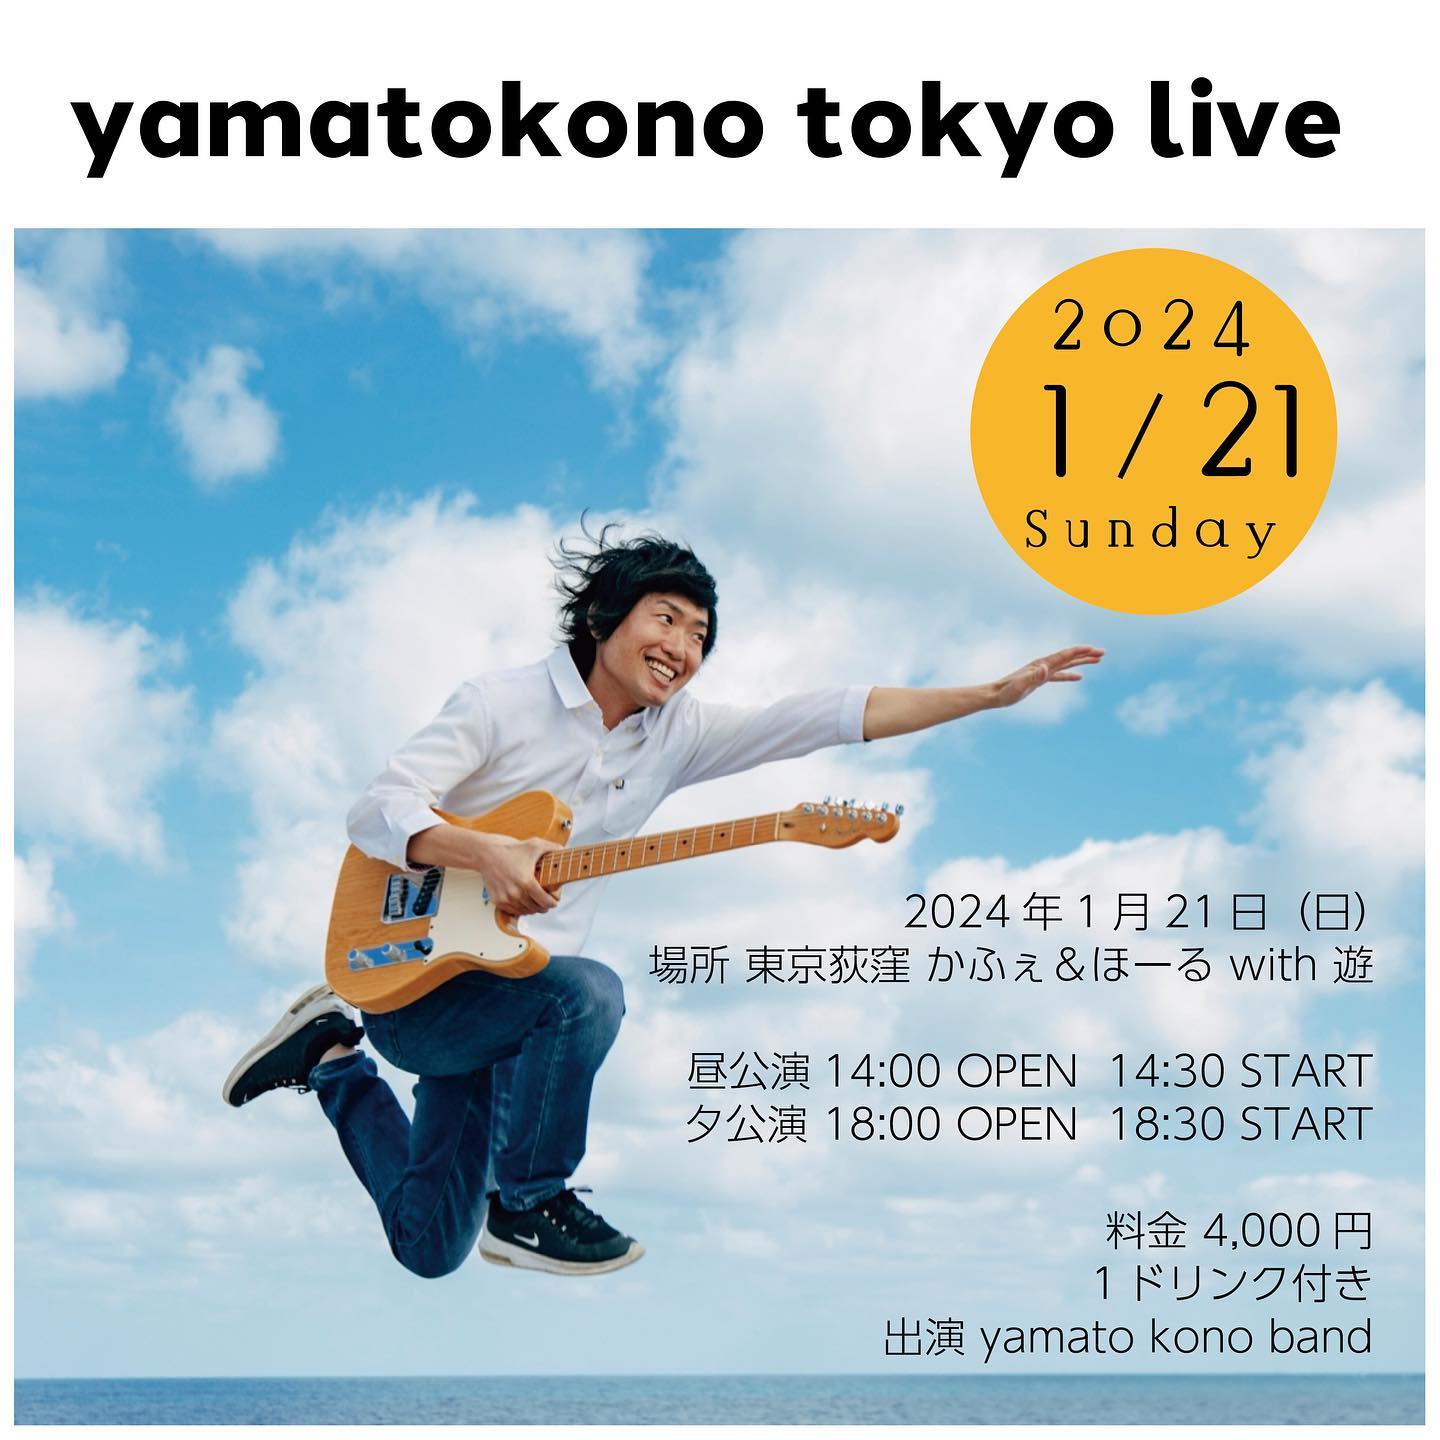 yamatokono tokyo live